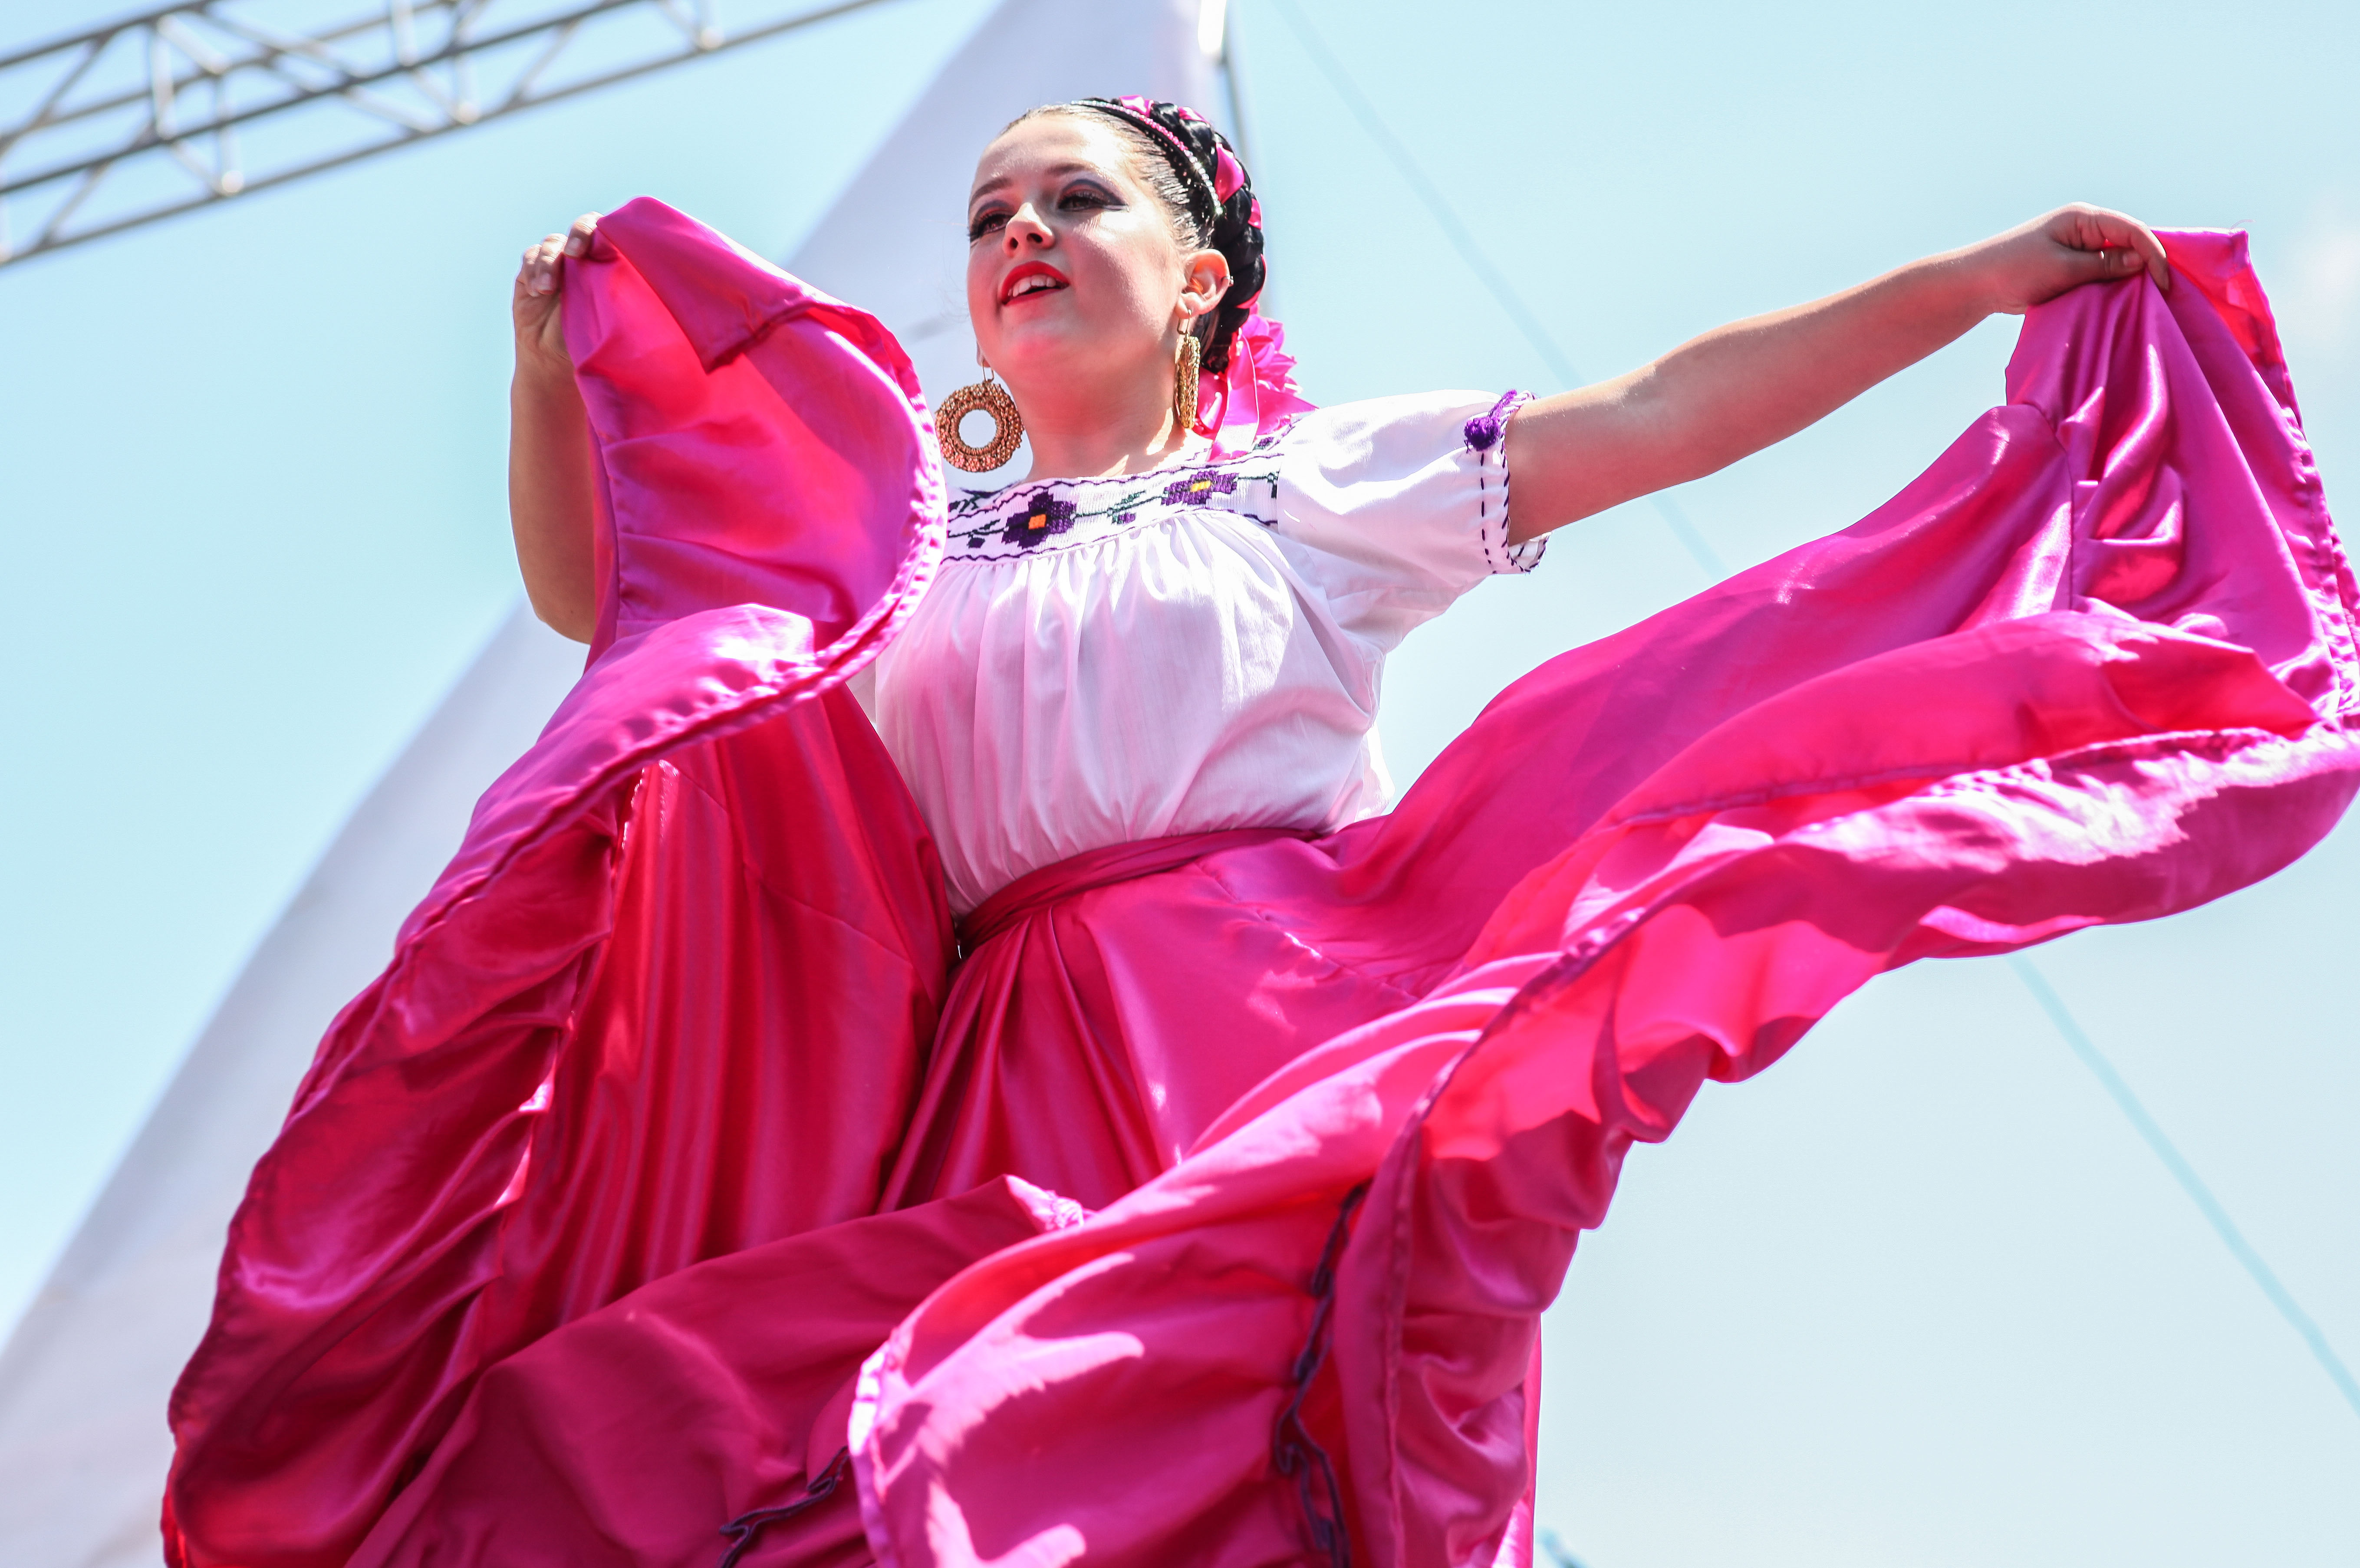 15th annual RVA Latino Festival is here